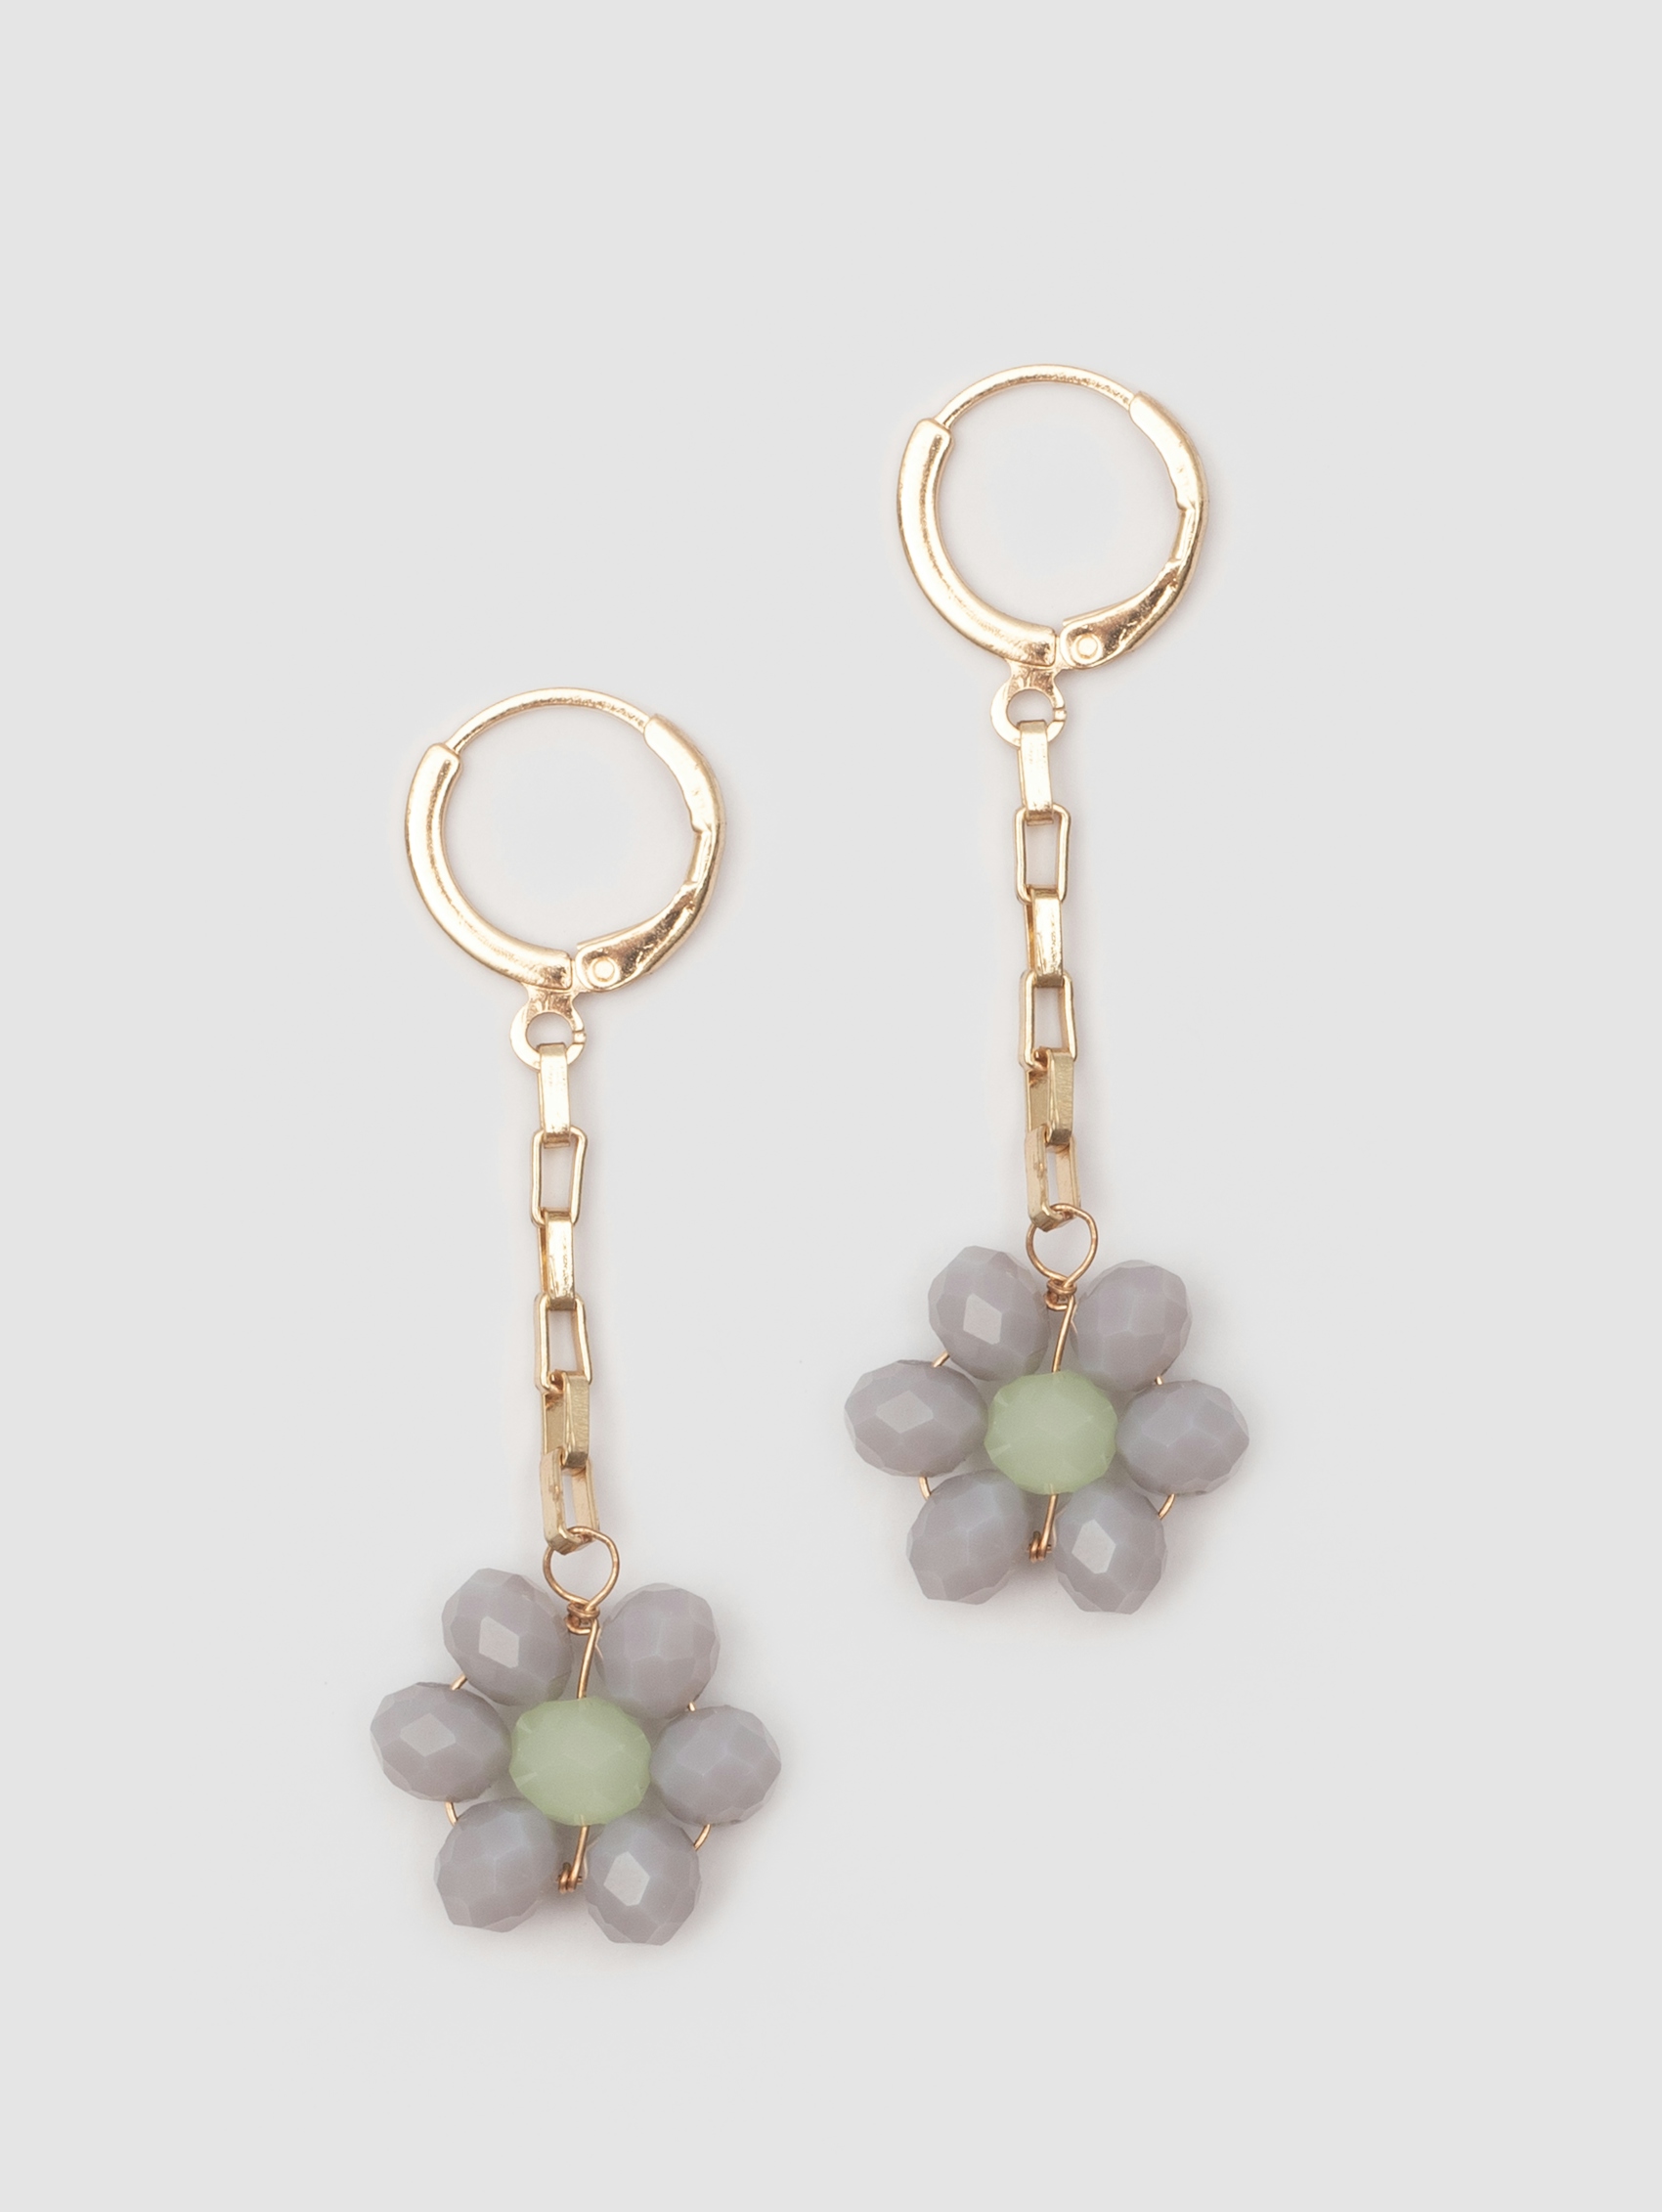 Dangling flower earrings